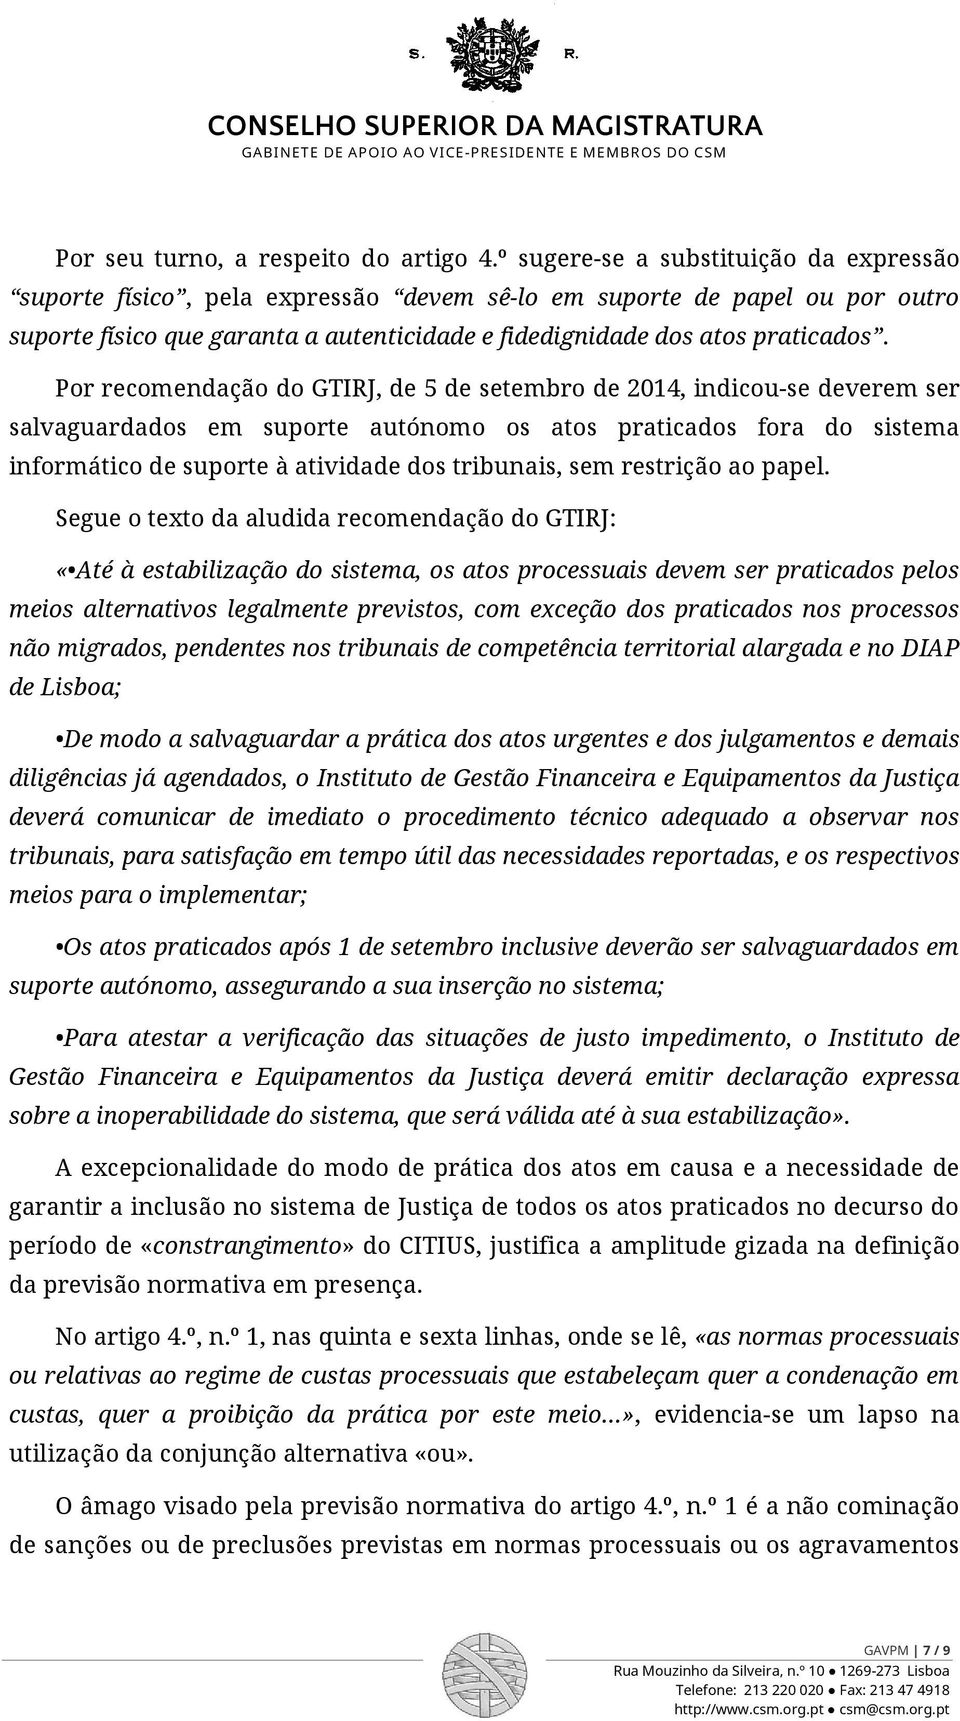 Por recomendação do GTIRJ, de 5 de setembro de 2014, indicou-se deverem ser salvaguardados em suporte autónomo os atos praticados fora do sistema informático de suporte à atividade dos tribunais, sem